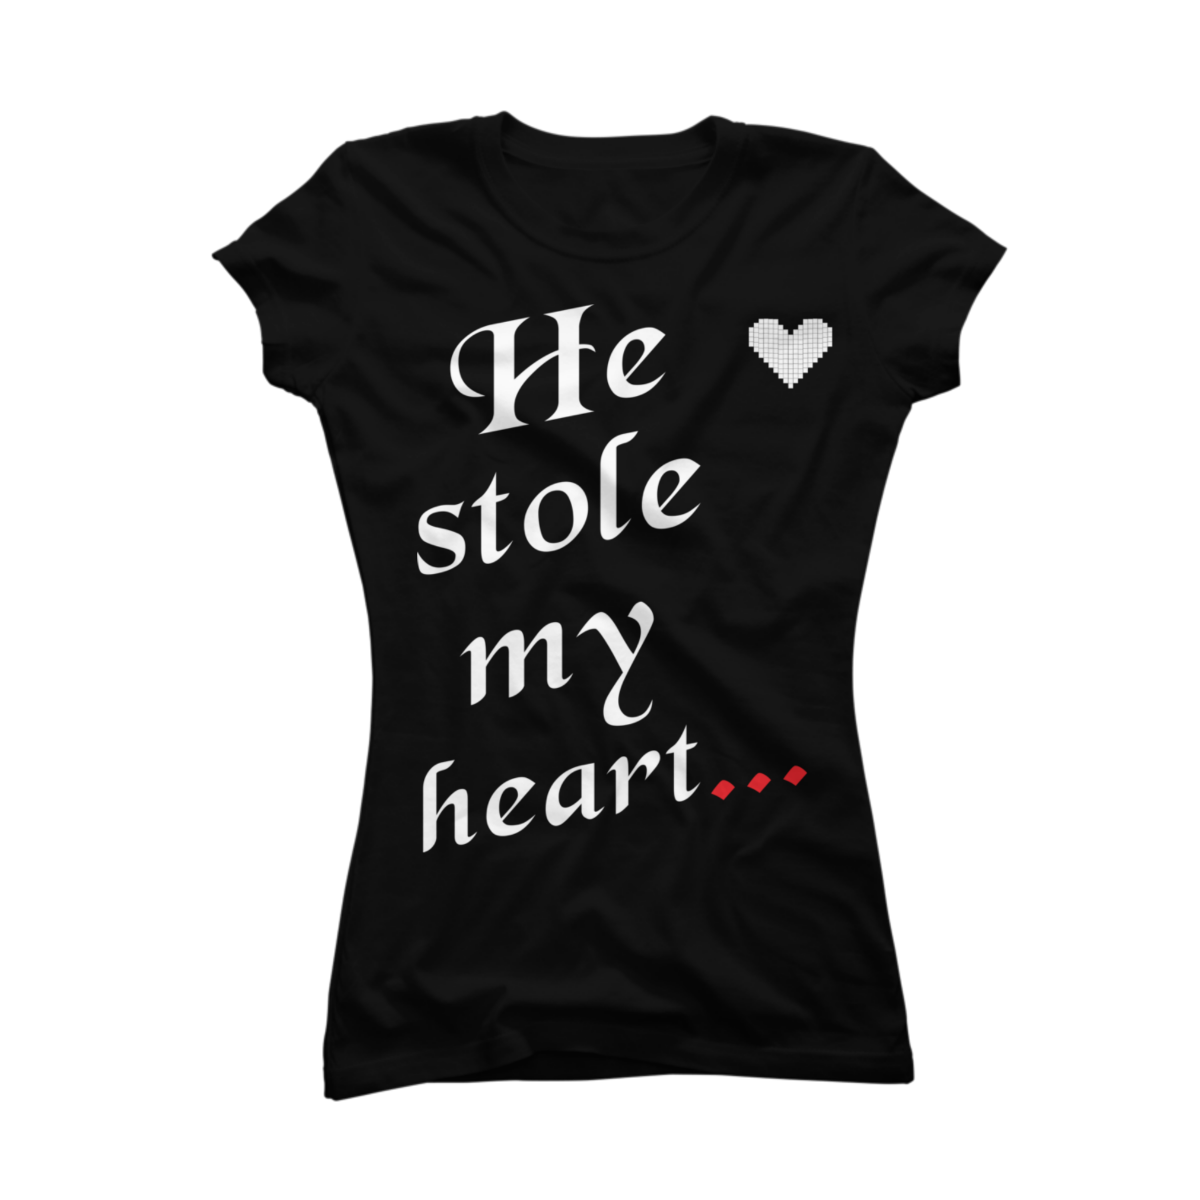 he stole my heart t shirt